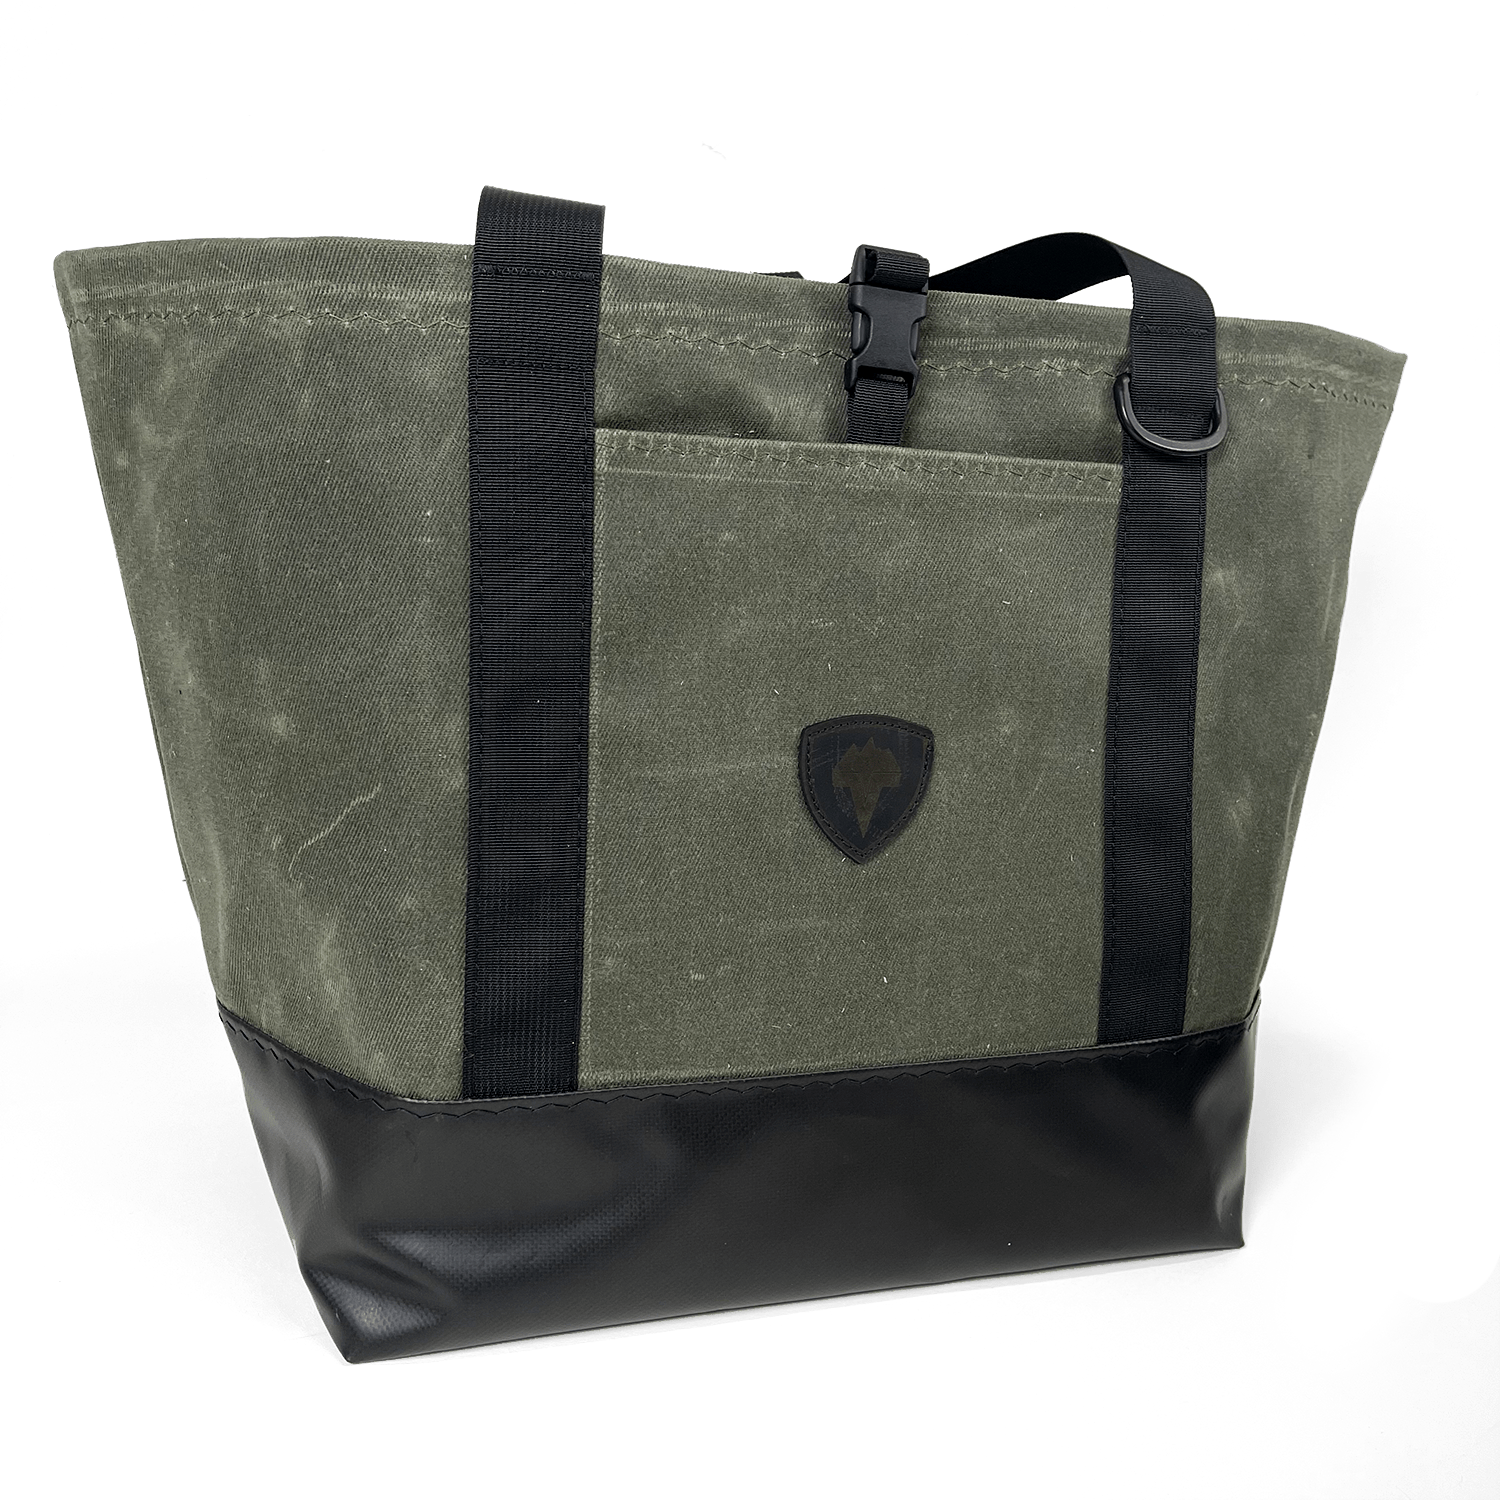 Waterproof Wader Bag // American Made to Order by VEDAVOO